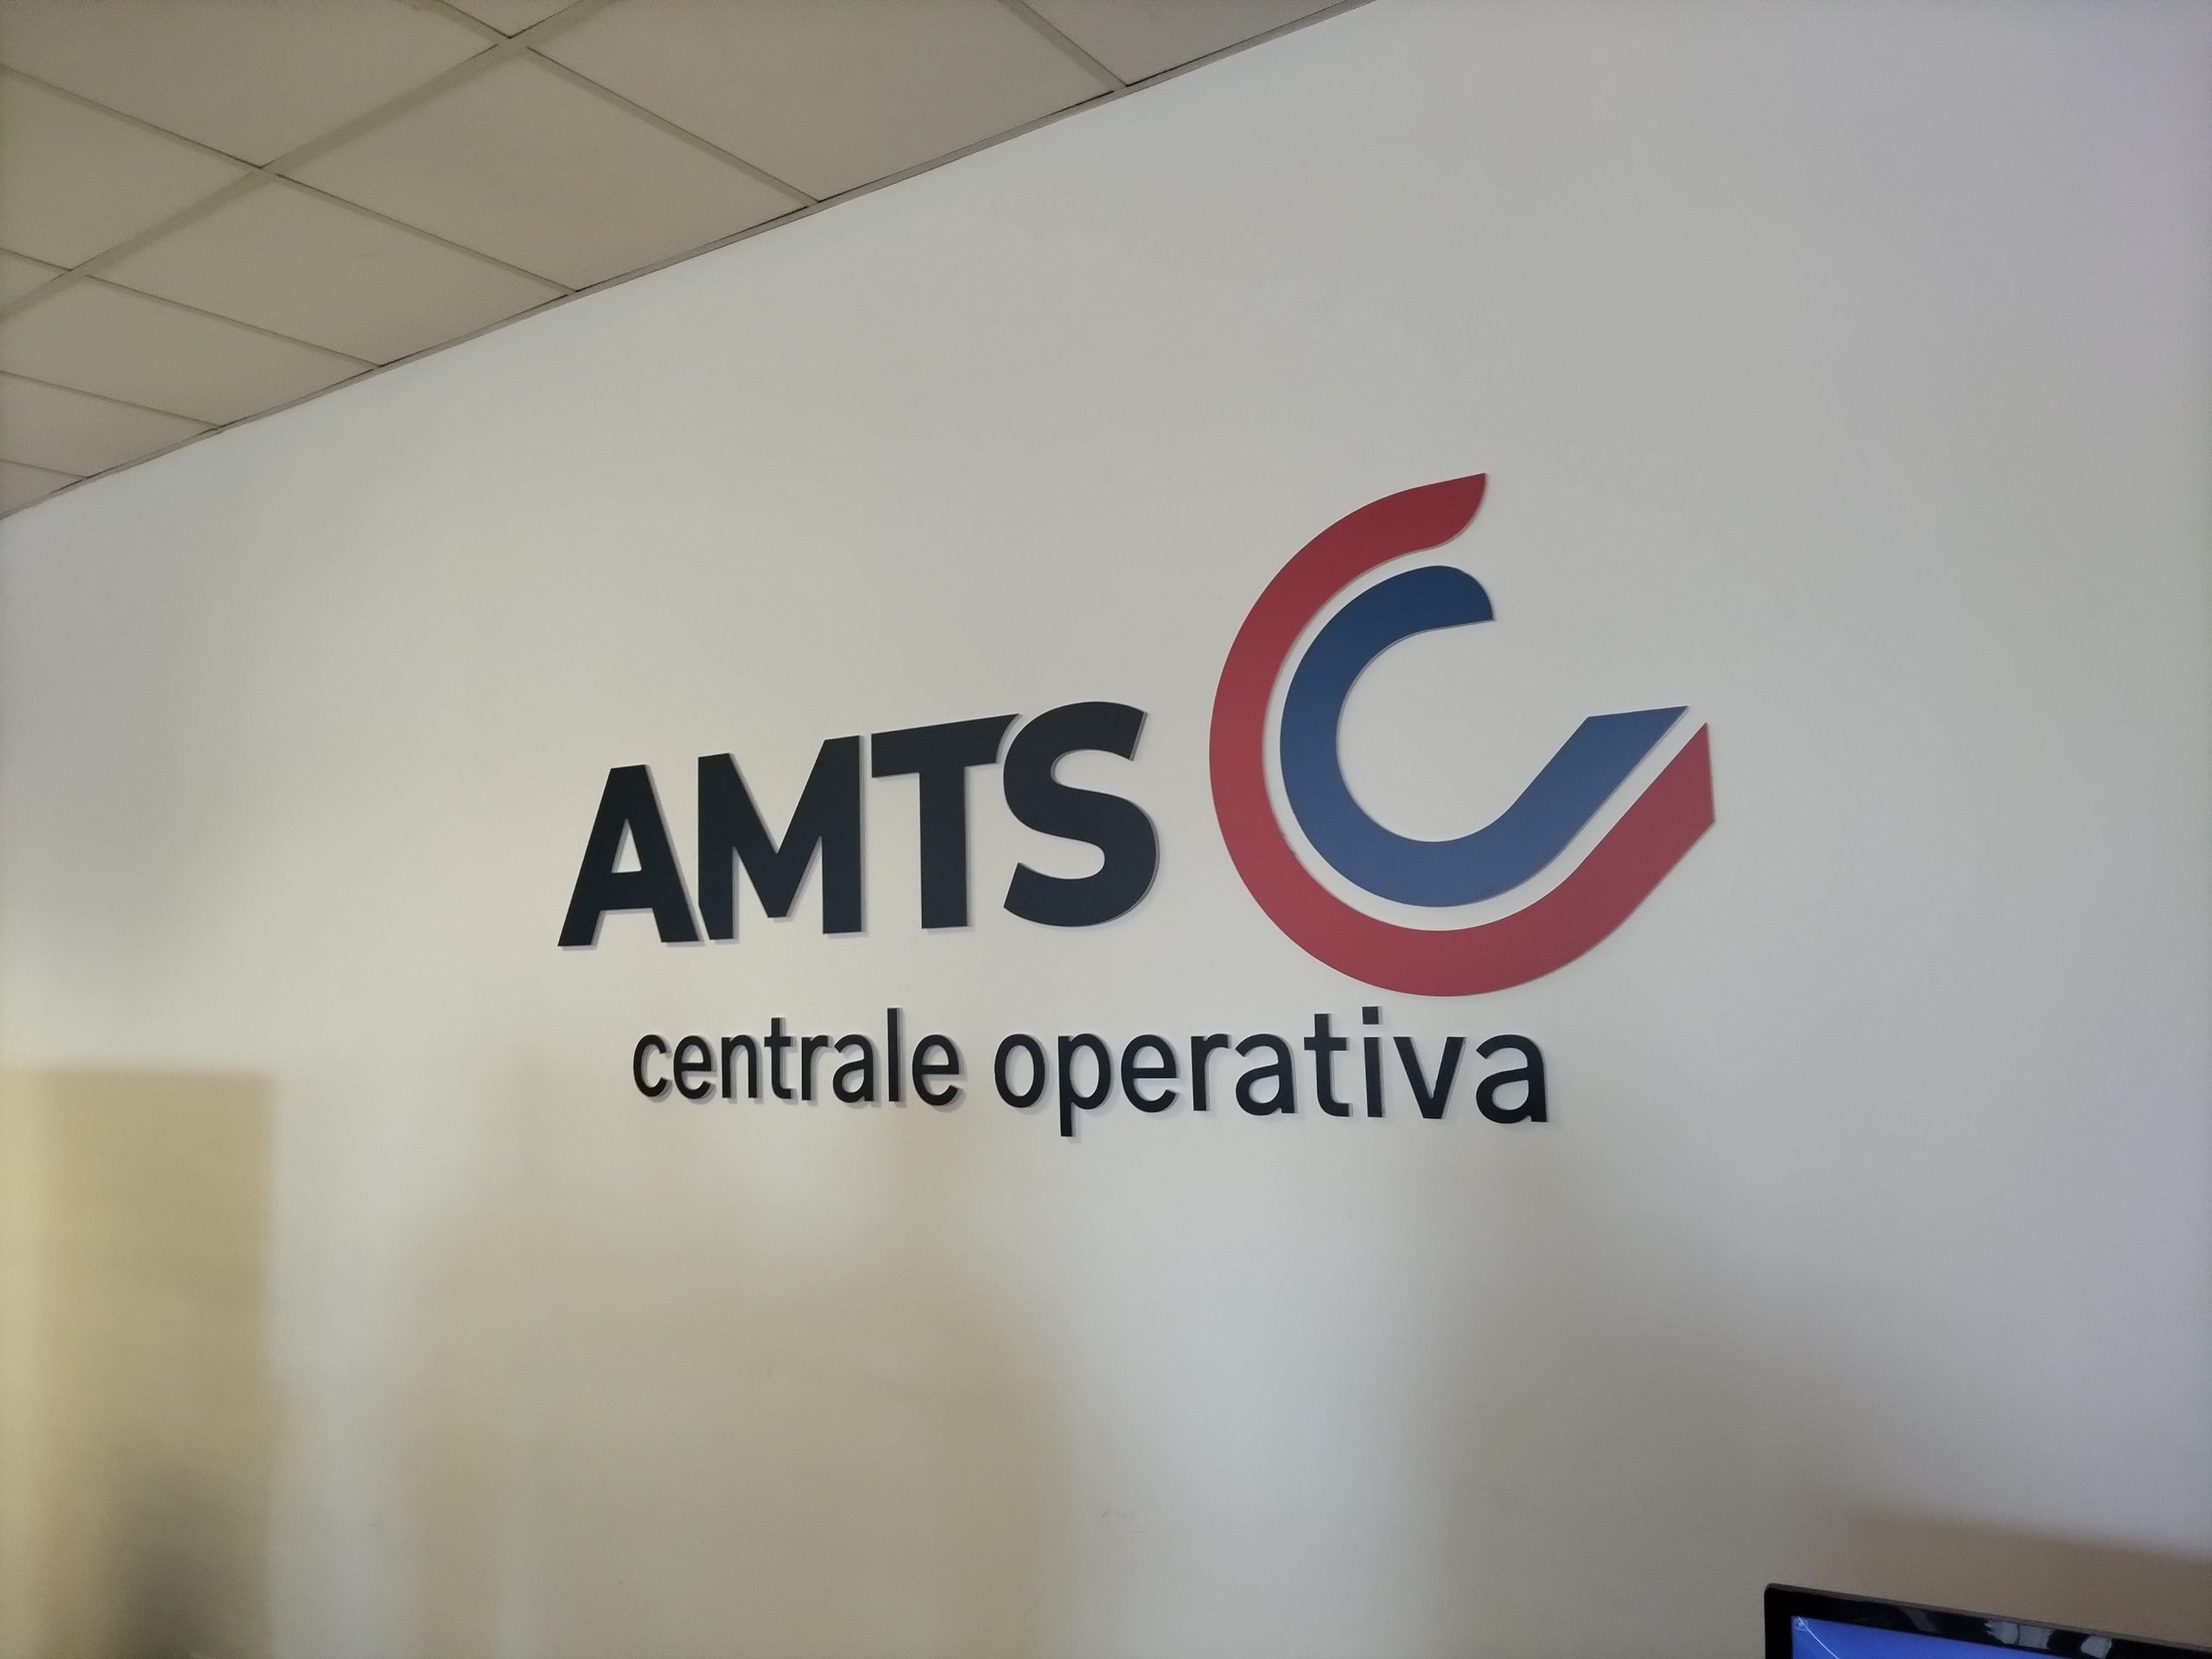 Amts presenta la nuova centrale operativa per migliorare i propri servizi